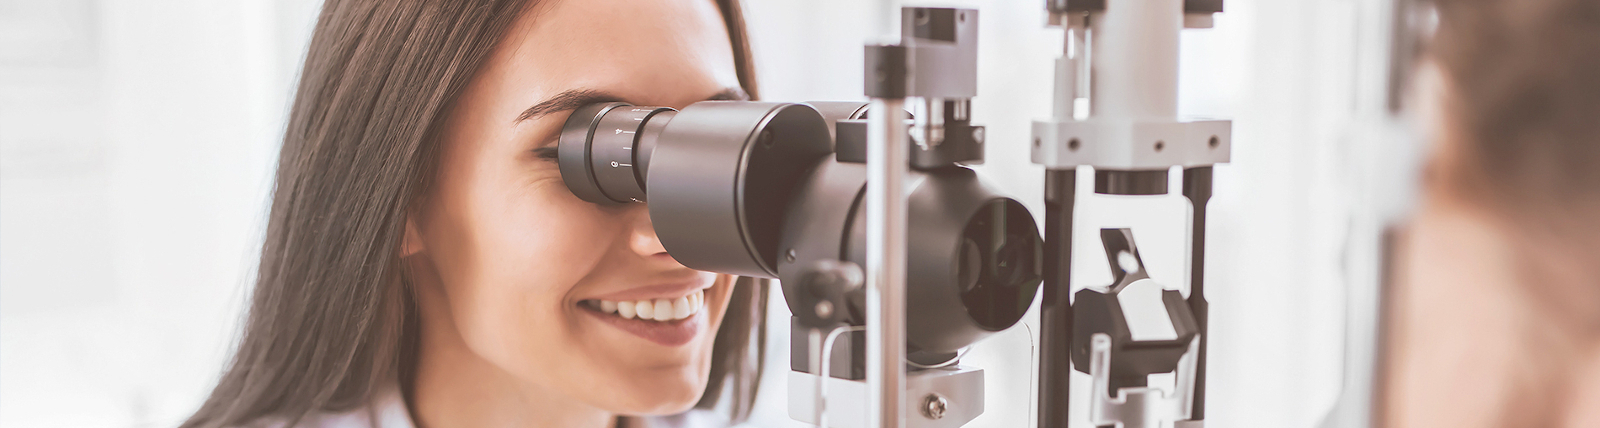 Ocular Center | Diagnóstico em Oftalmologia - Novo Hamburgo